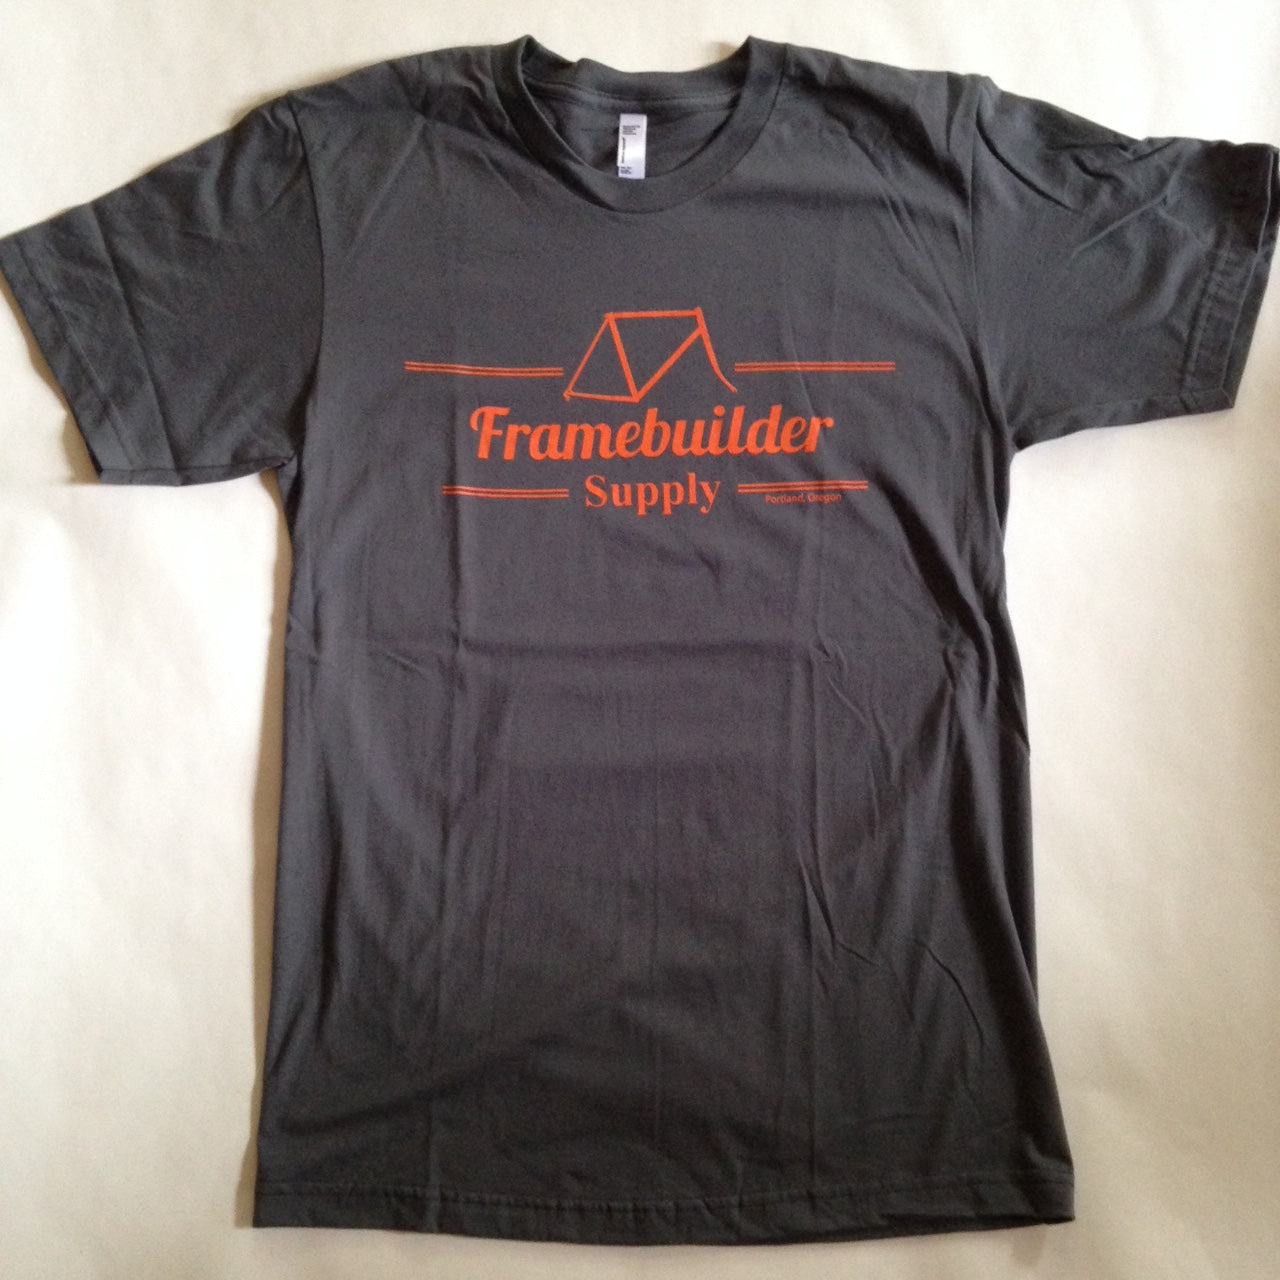 Framebuilder Supply t-shirt - FS logo only